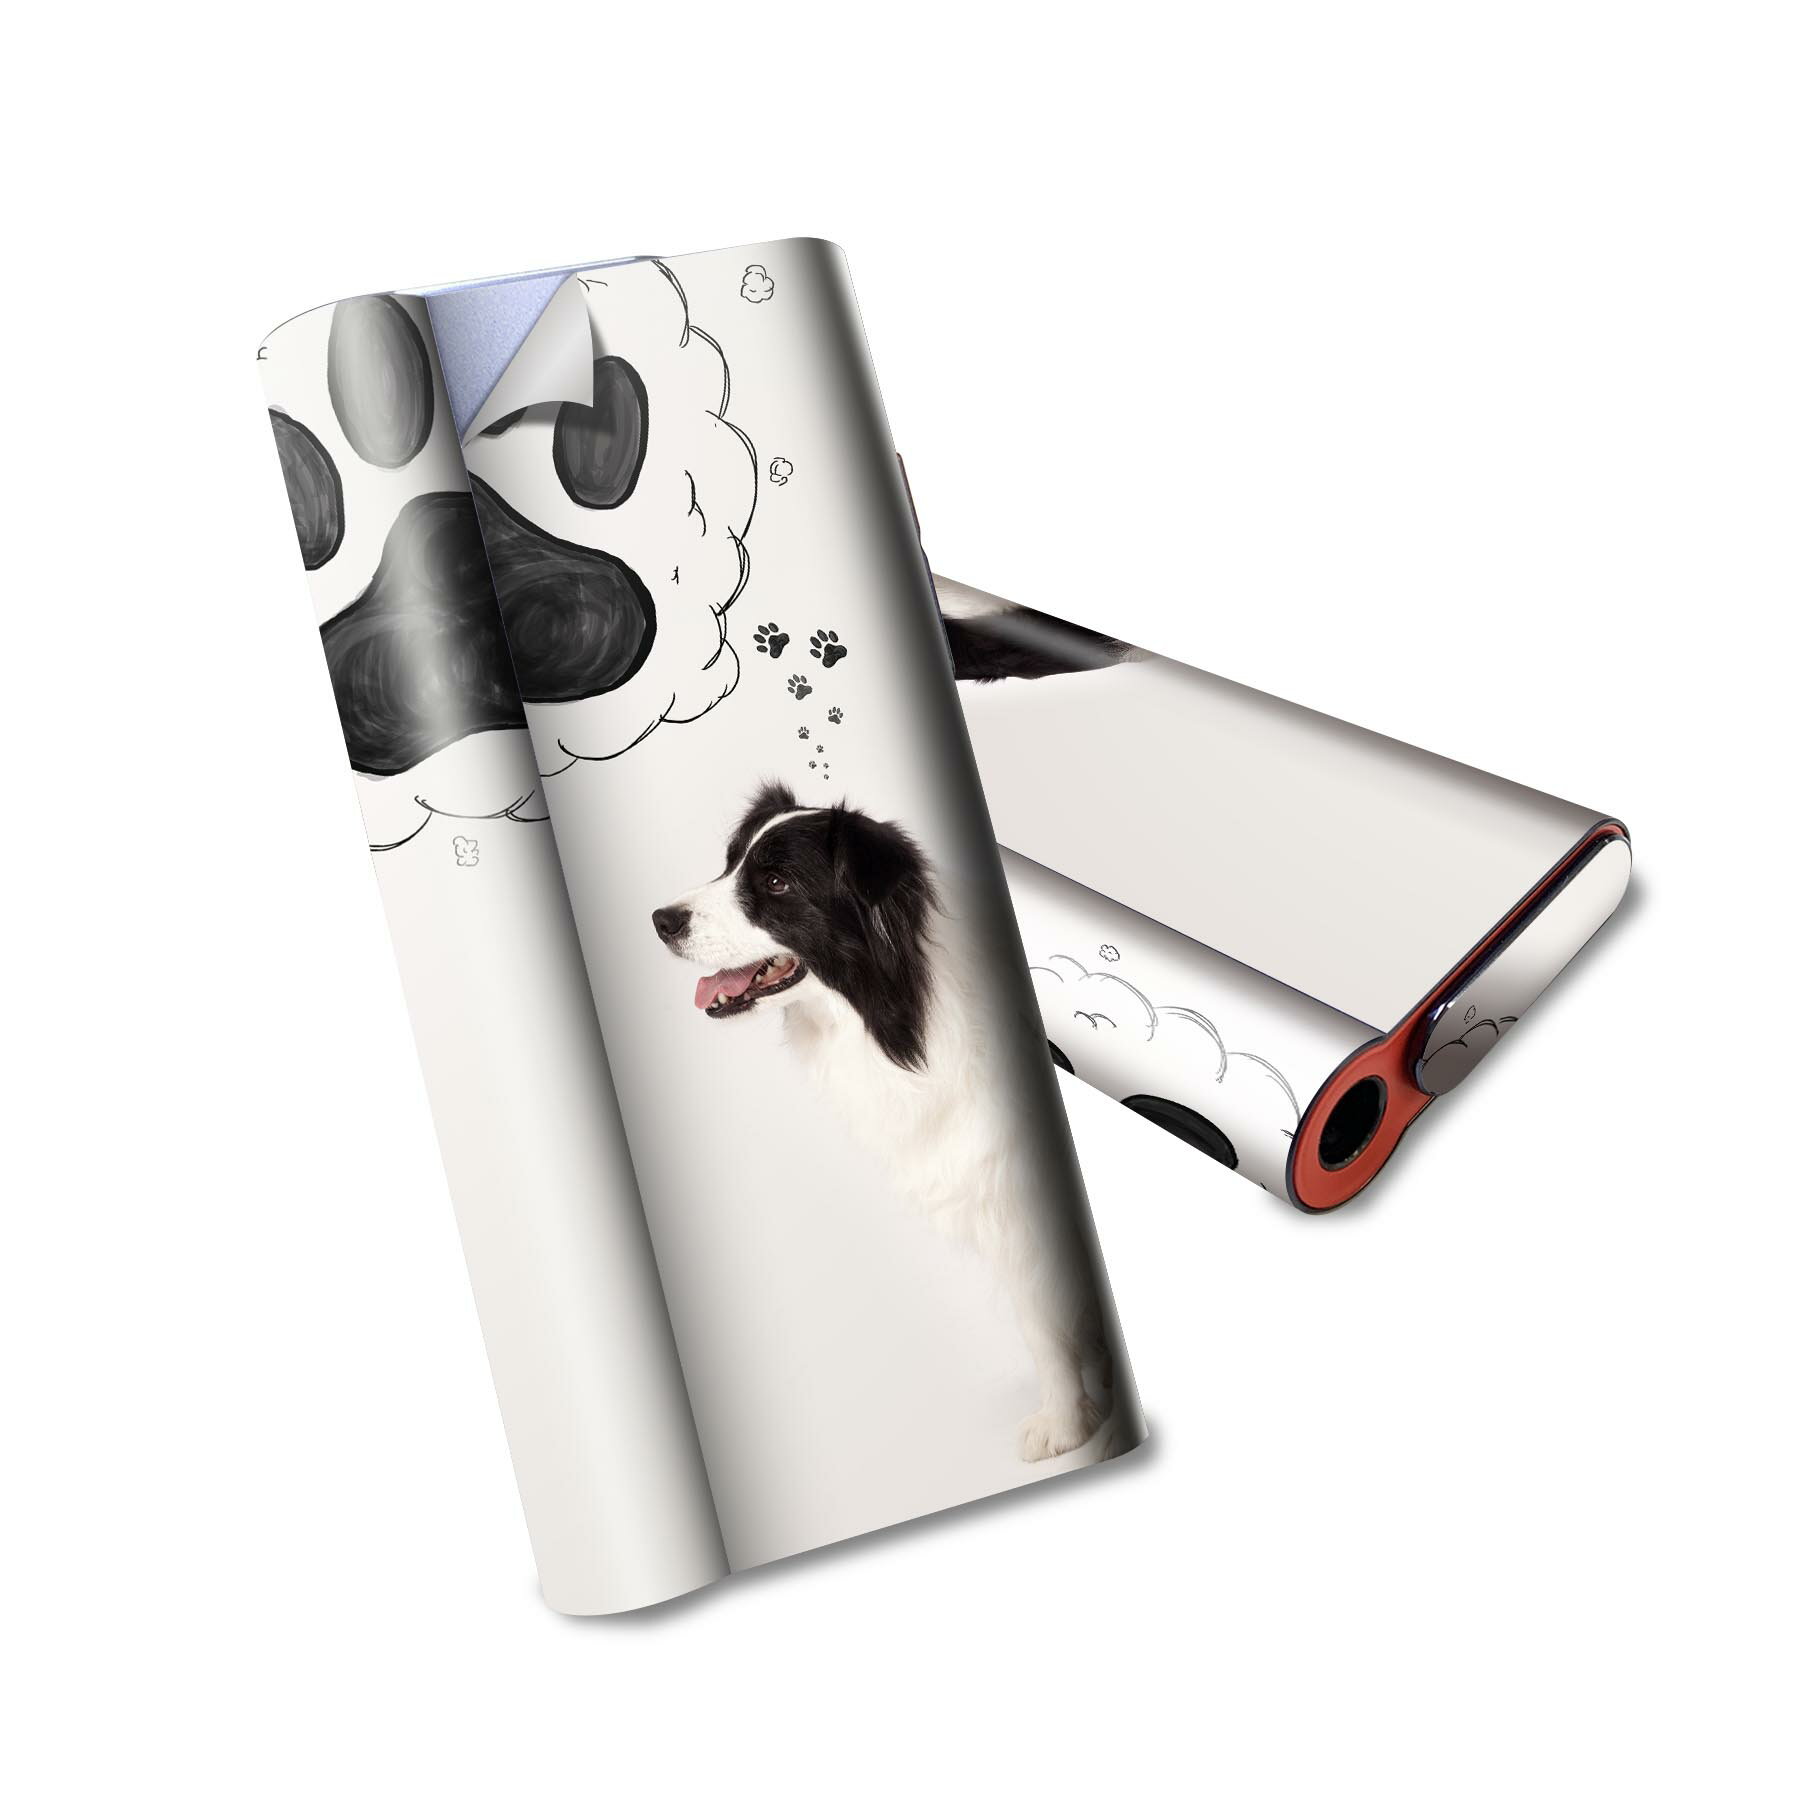 glo hyper air 専用 デザインスキンシール 全面 フルセット カバー ケース 保護 グロー ハイパー エア グロウ ステッカー デコ アクセサリー 電子たばこ 009900 犬　動物　写真